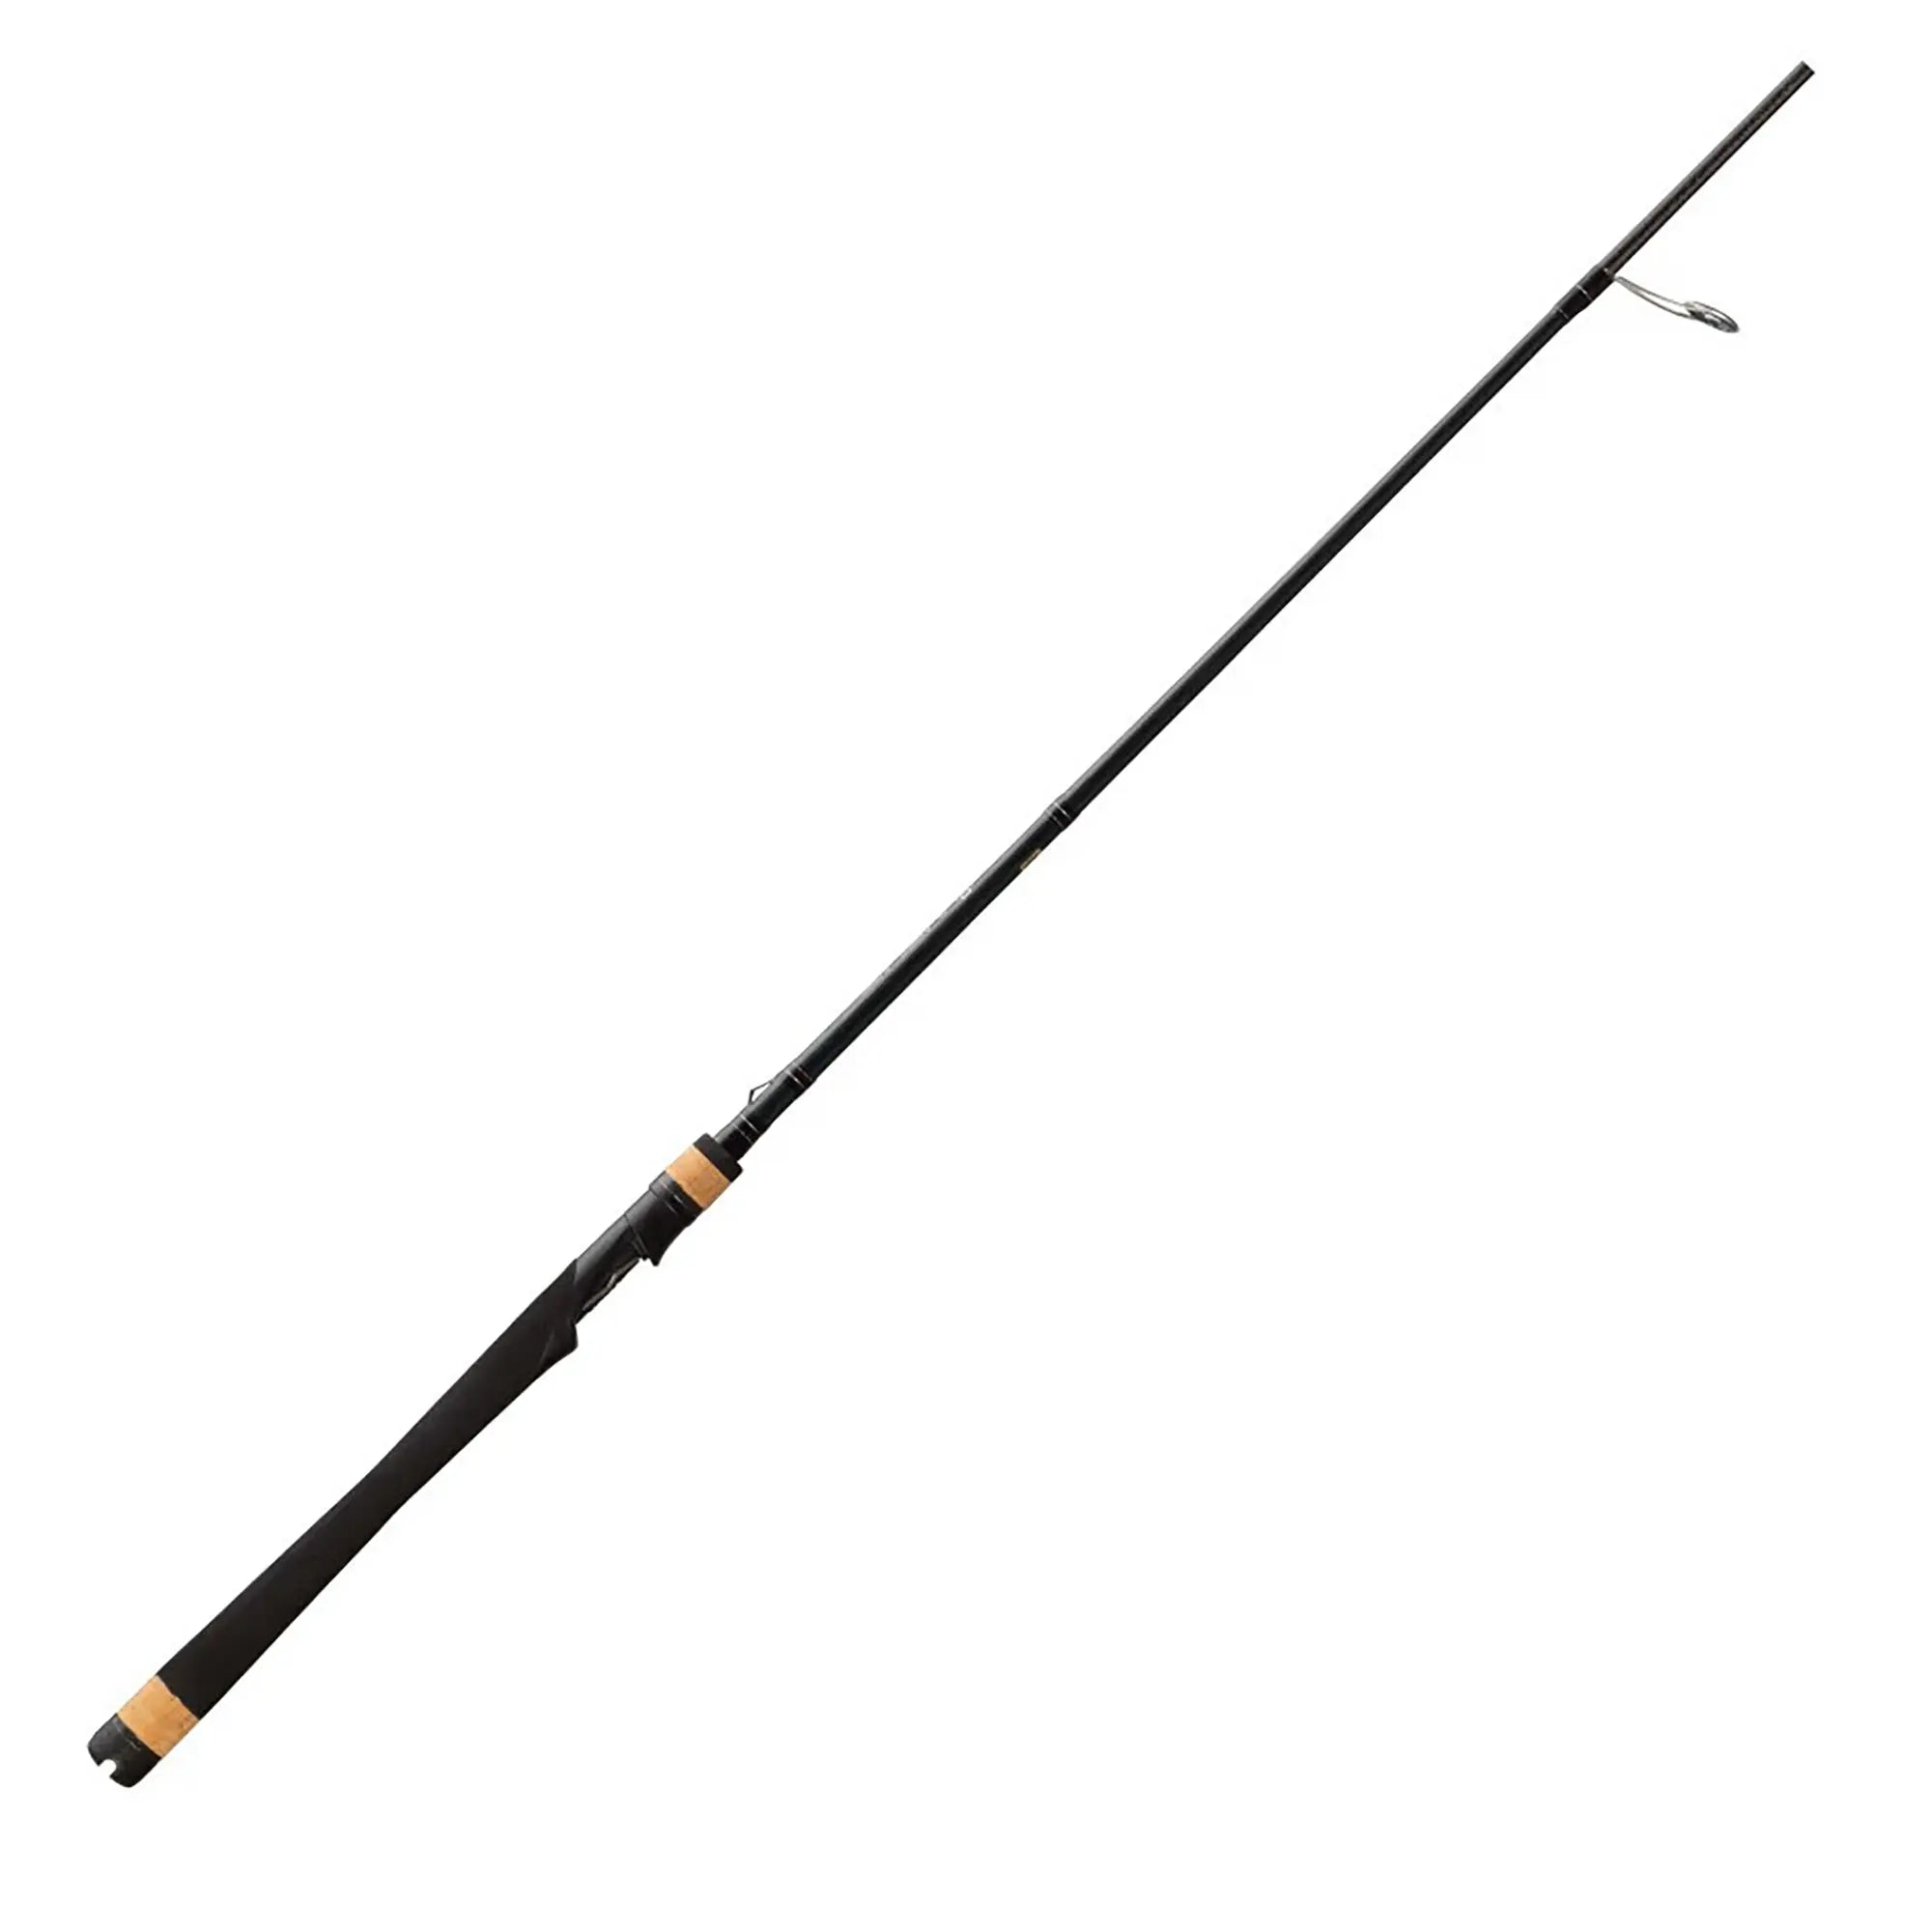 13 Fishing Omen +S Spinning Fishing Rod - 7'4" (Medium Light) 13 Fishing